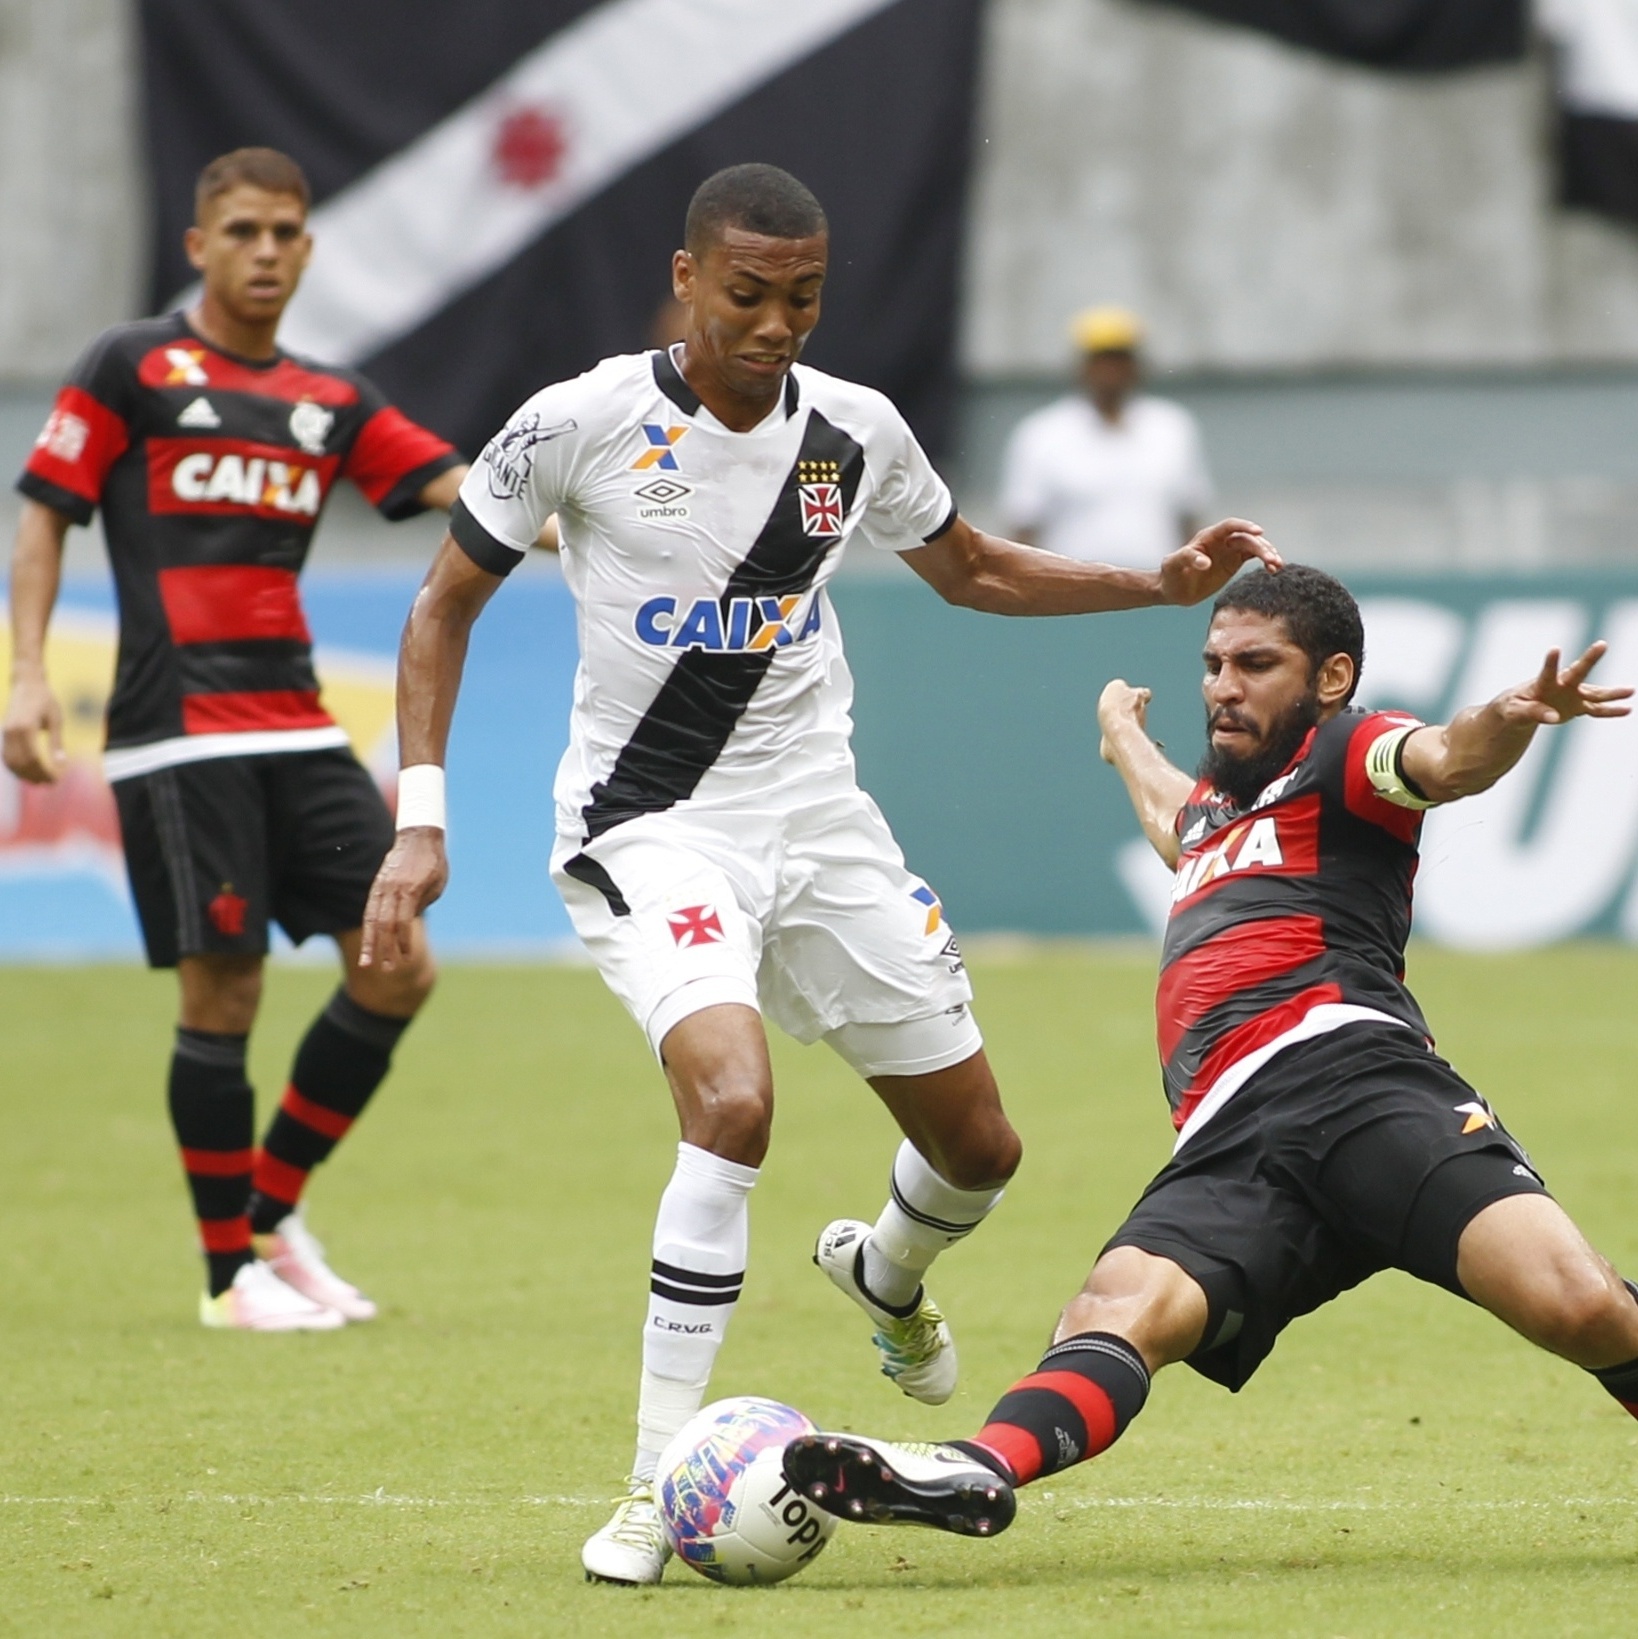 Isla se reapresenta ao Flamengo, é multado e está fora do clássico contra  Vasco pelo Carioca, Flamengo